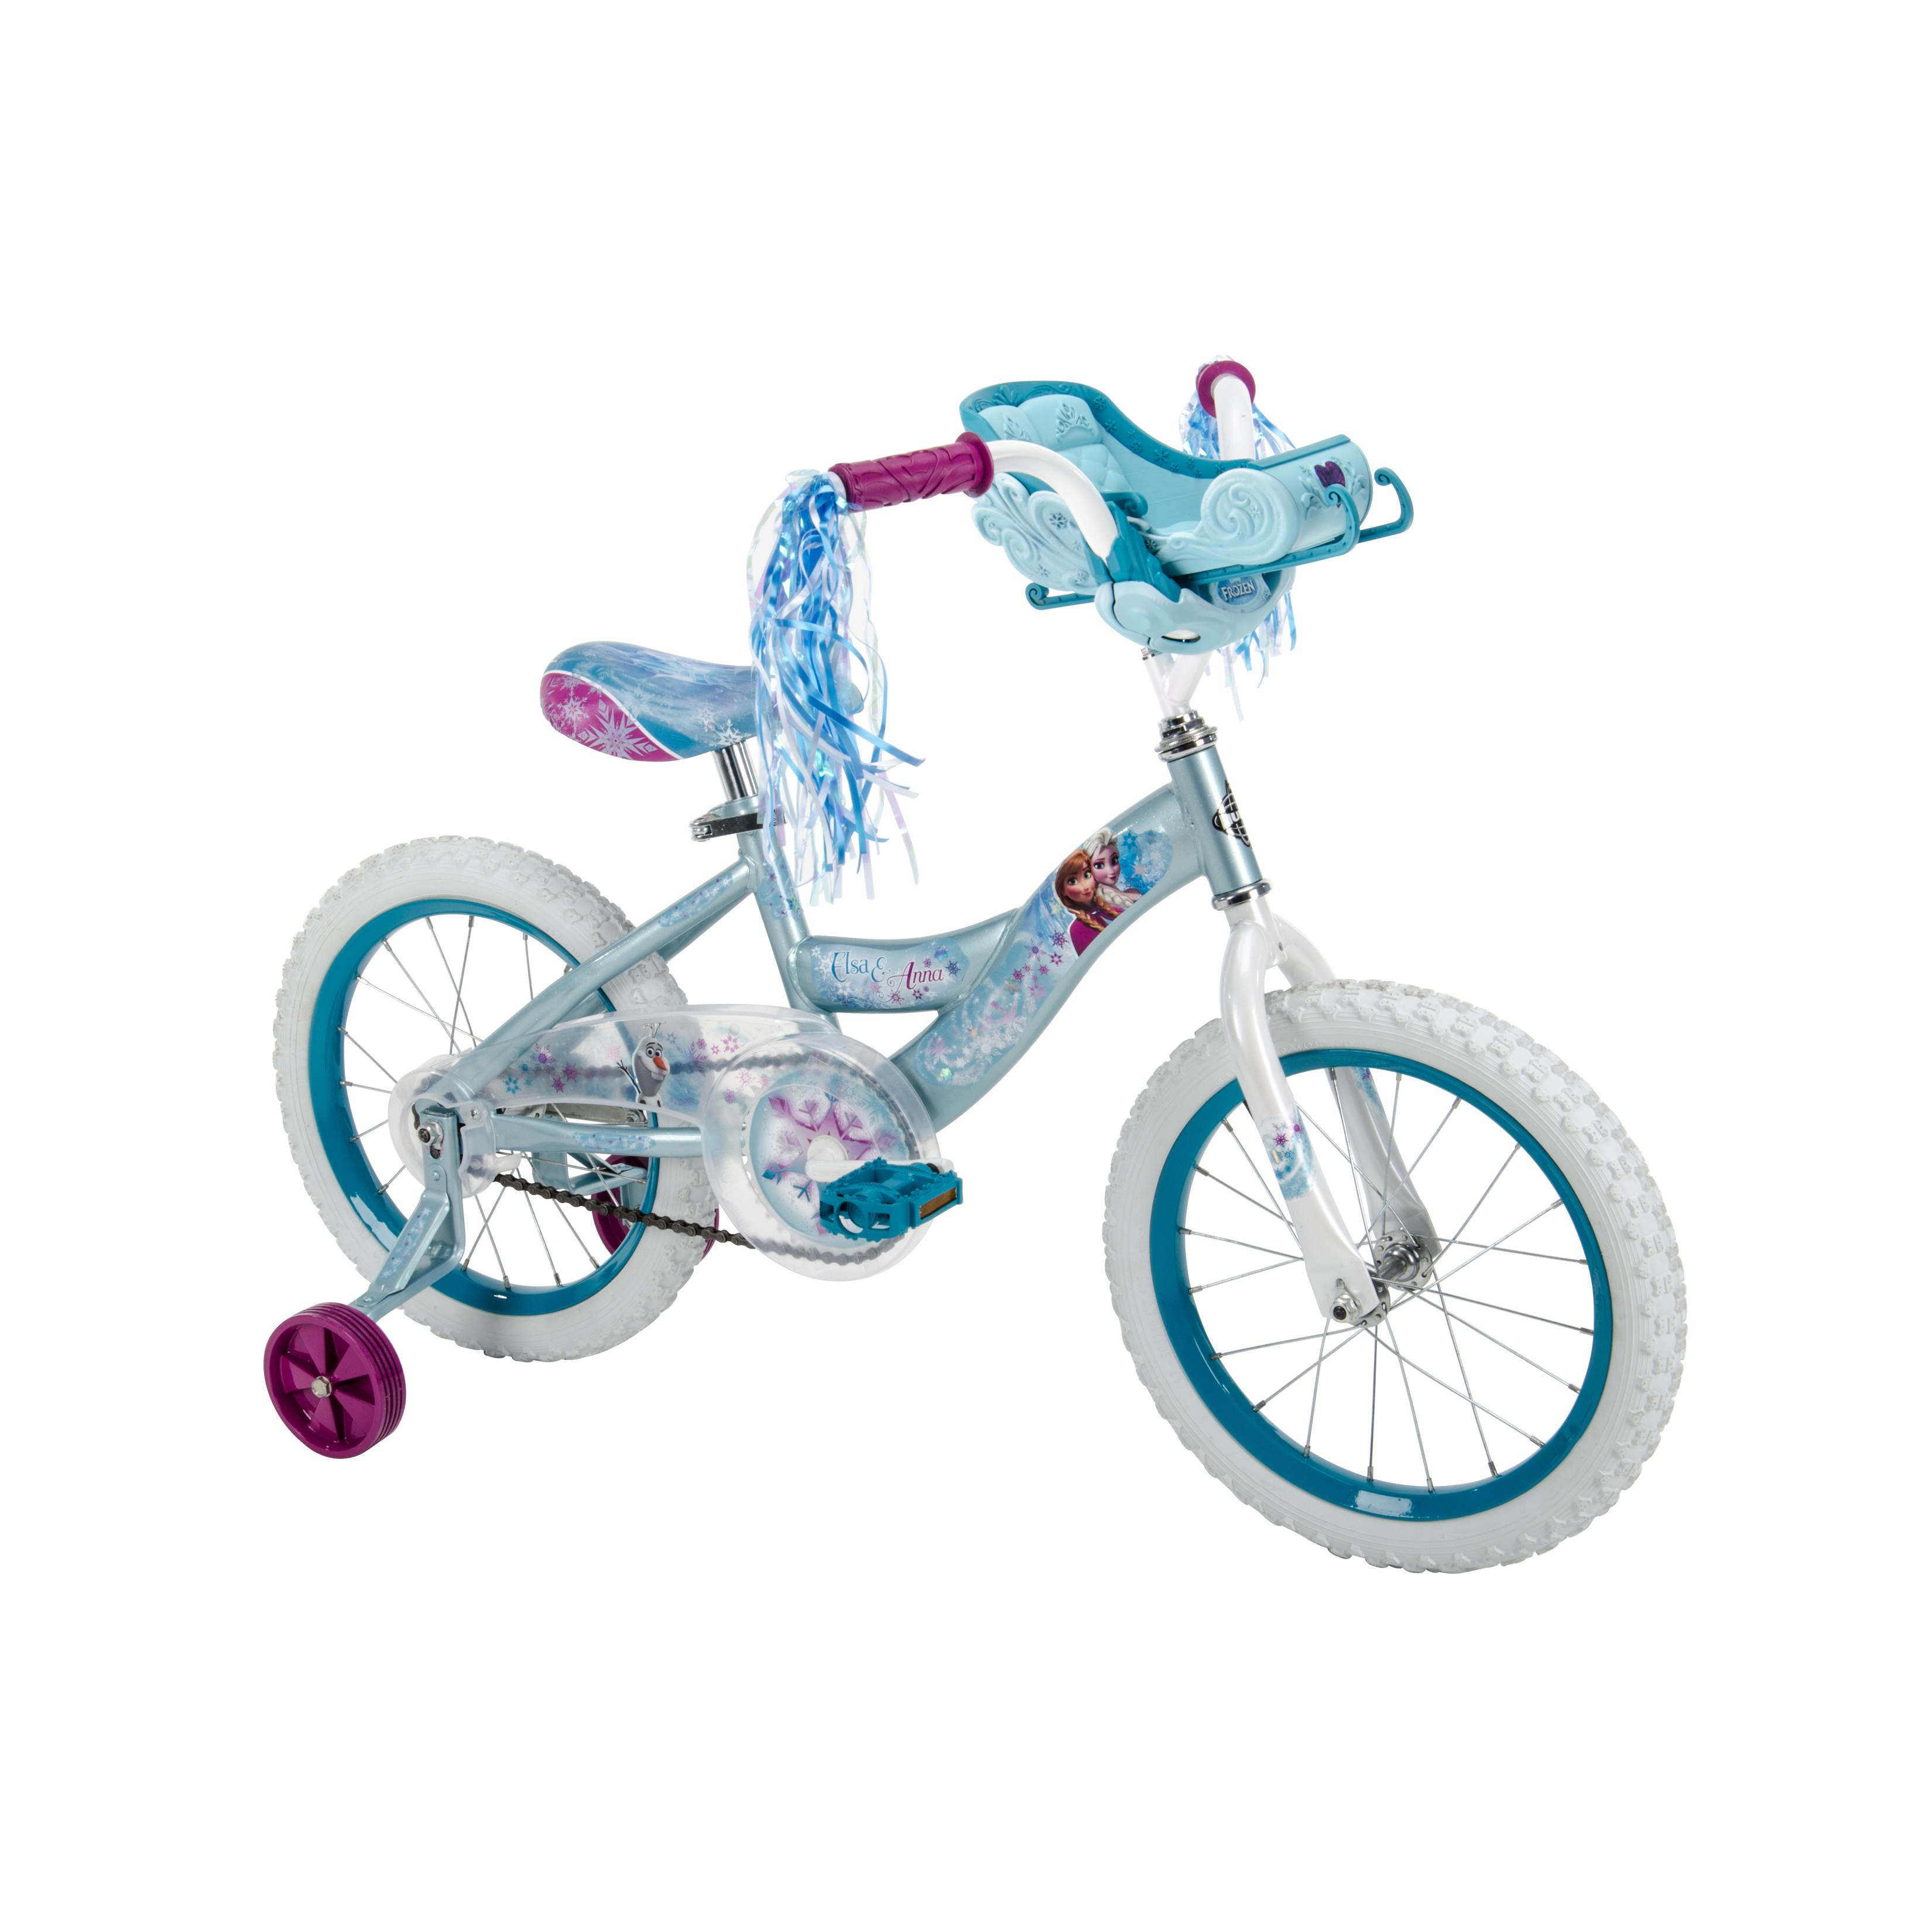 Huffy 16" Girl's Bike Disney Frozen